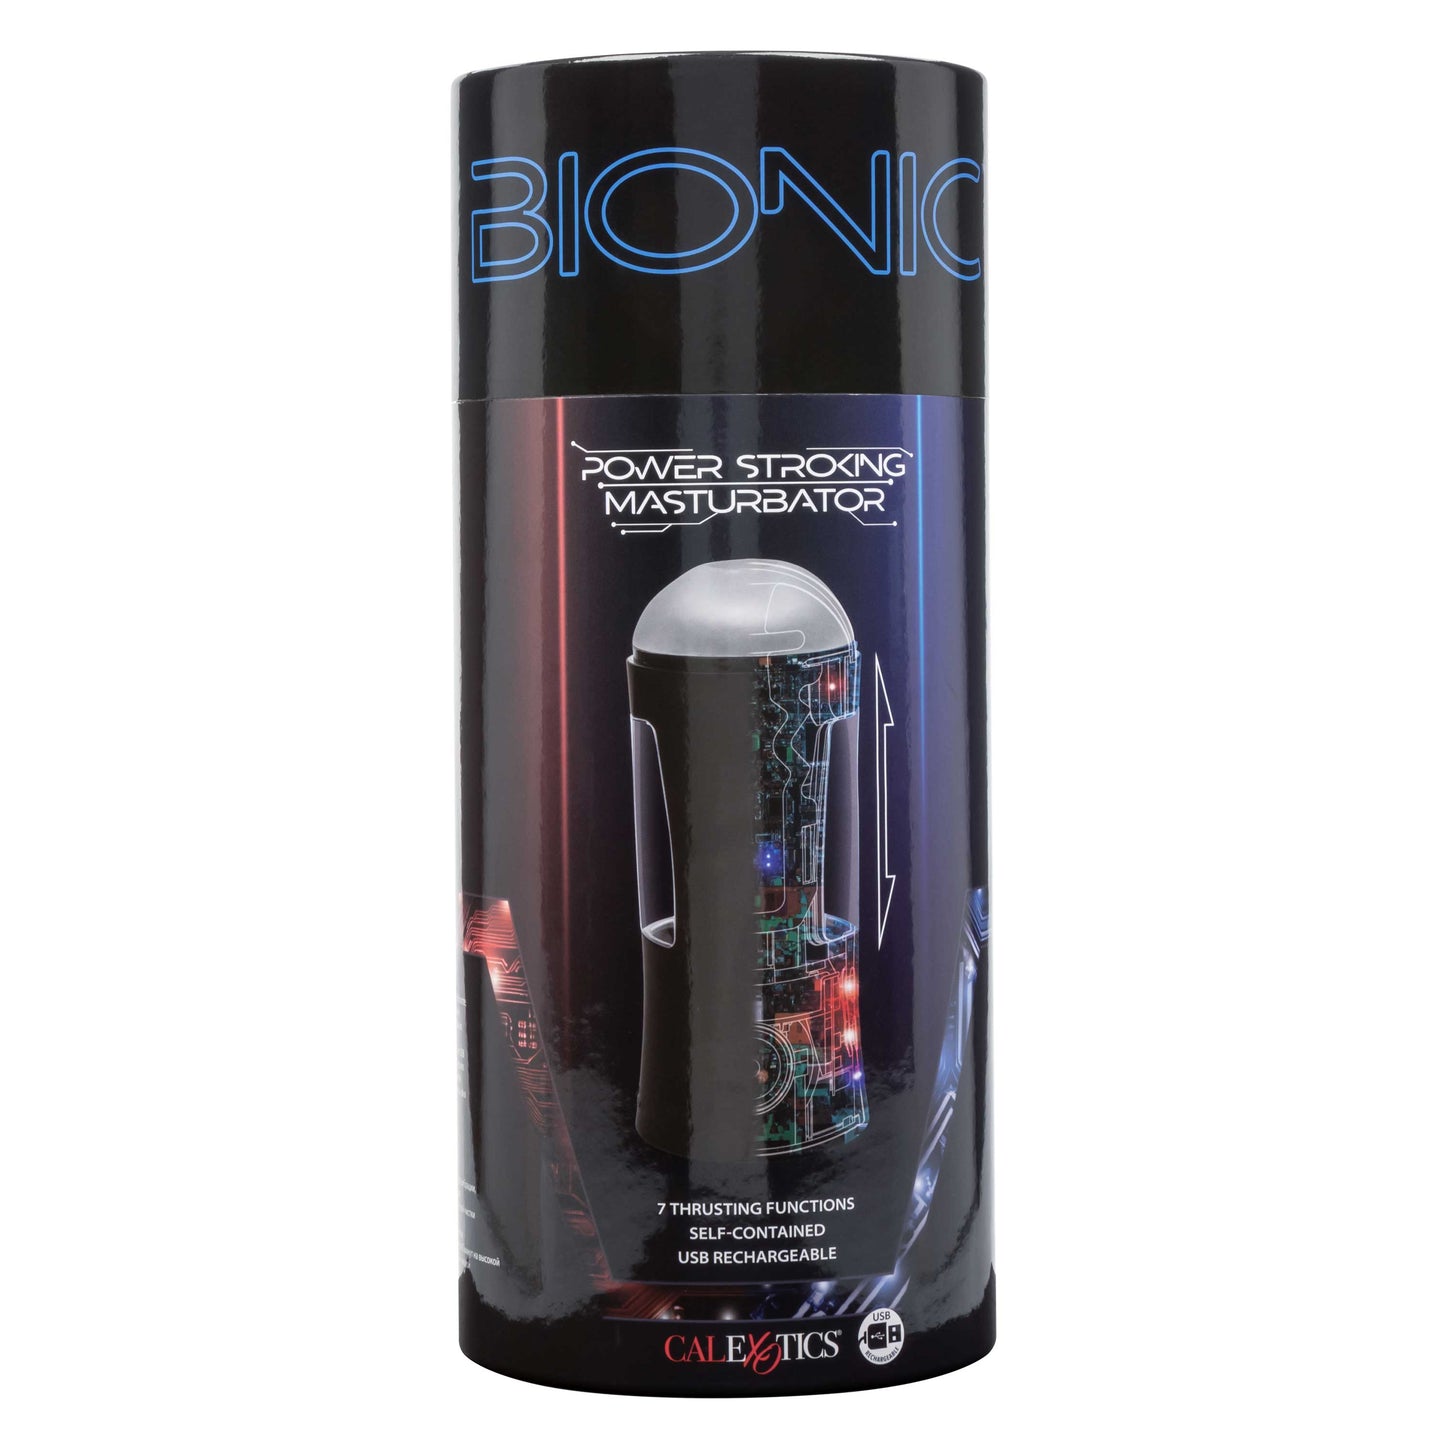 Bionic Power Stroking Masturbator - Black